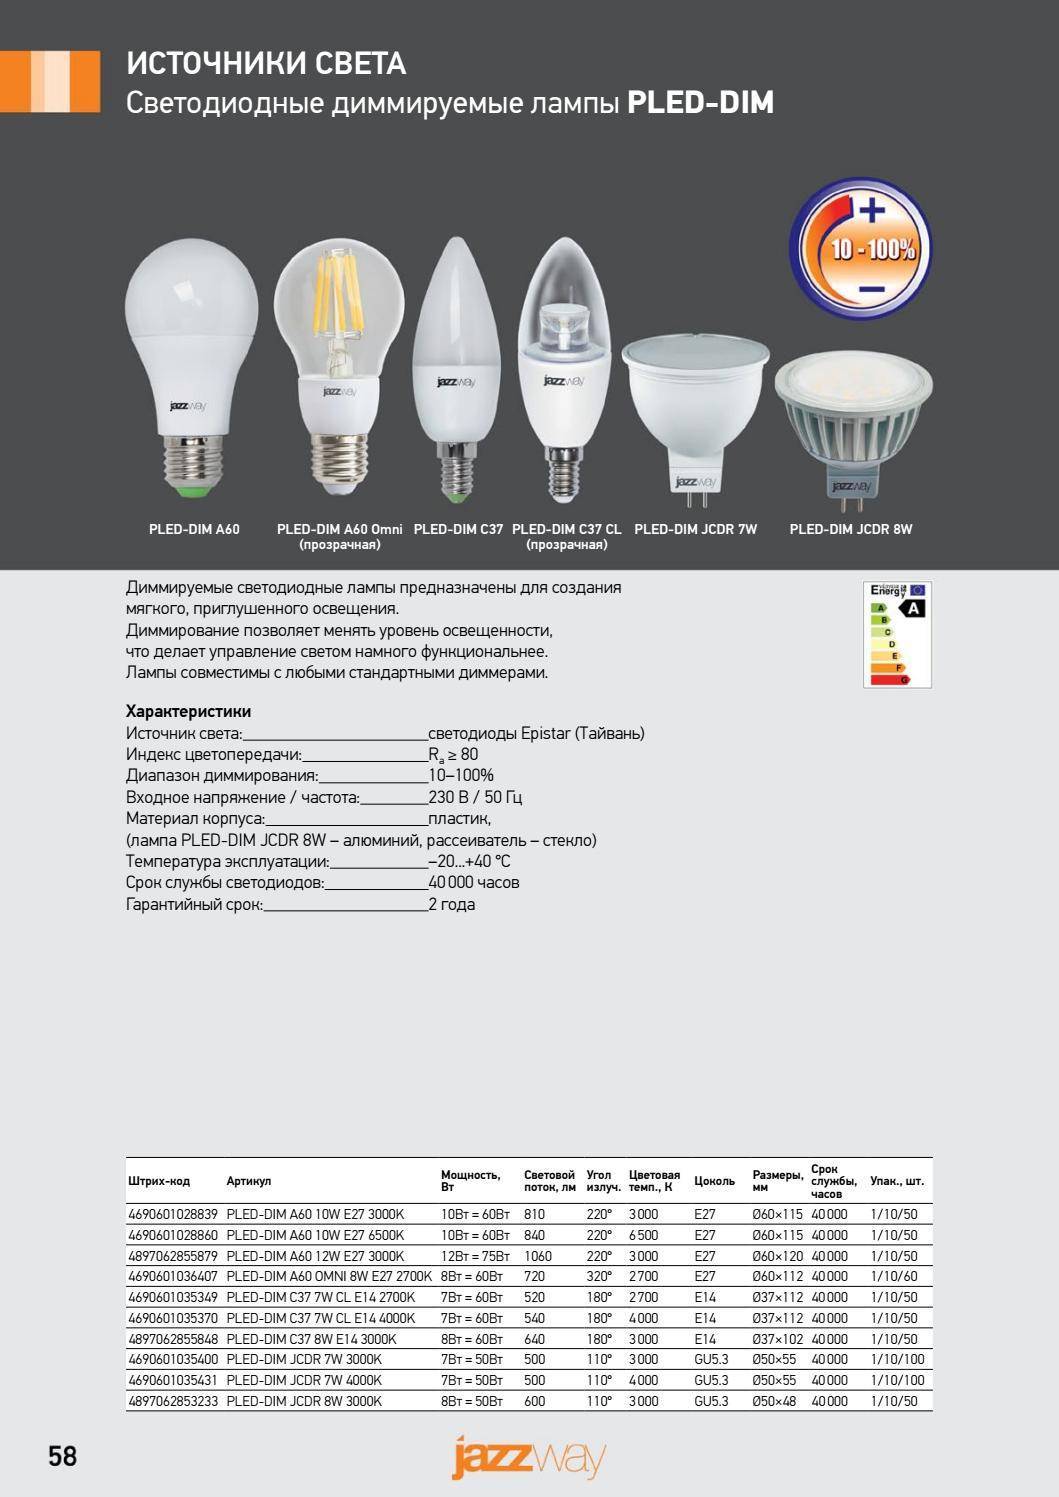 Диммируемая светодиодная лампа: принцип работы, критерии выбора, плюсы и минусы